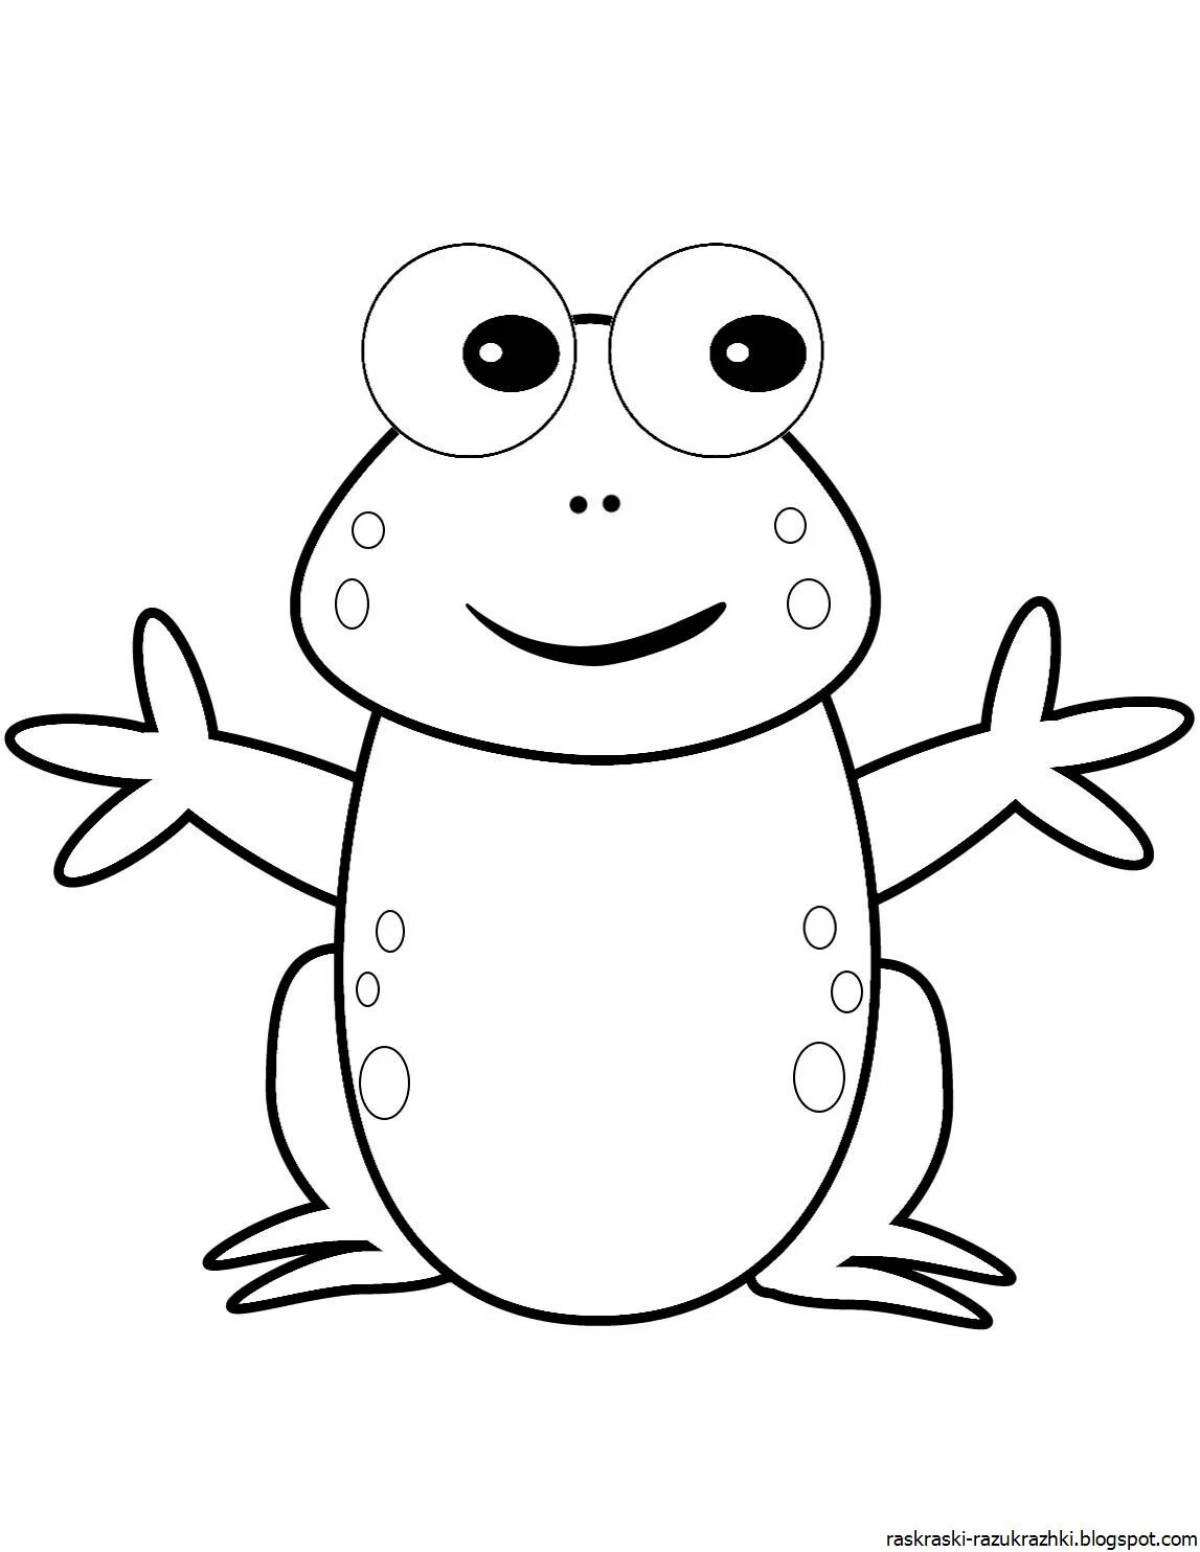 Attractive cartoon frog coloring book